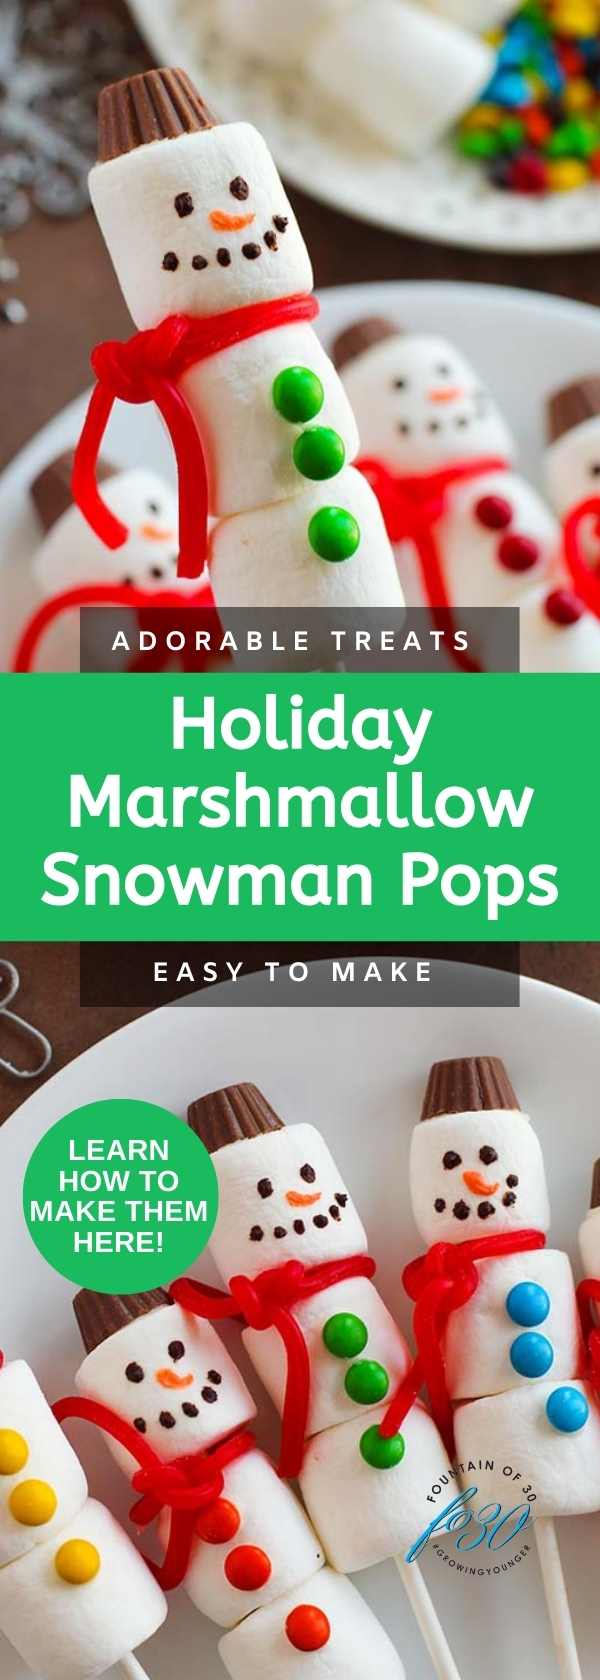 Marshmallow Snowman Pops fountainof30